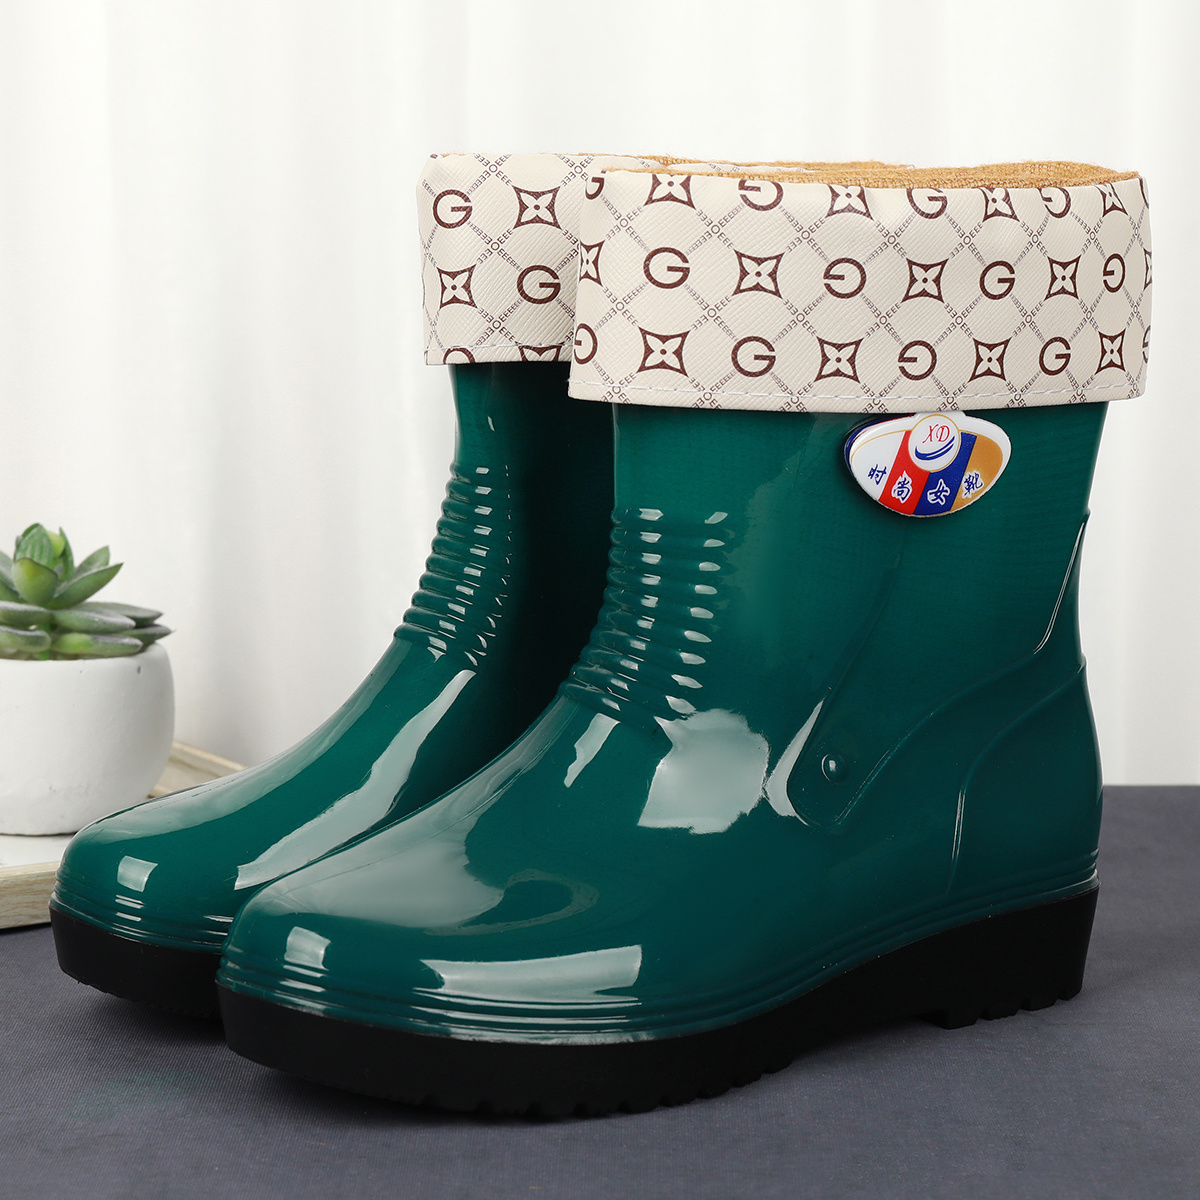 成人时尚雨鞋女士加棉保暖防水防滑耐磨中筒胶鞋套鞋外穿漂亮雨靴